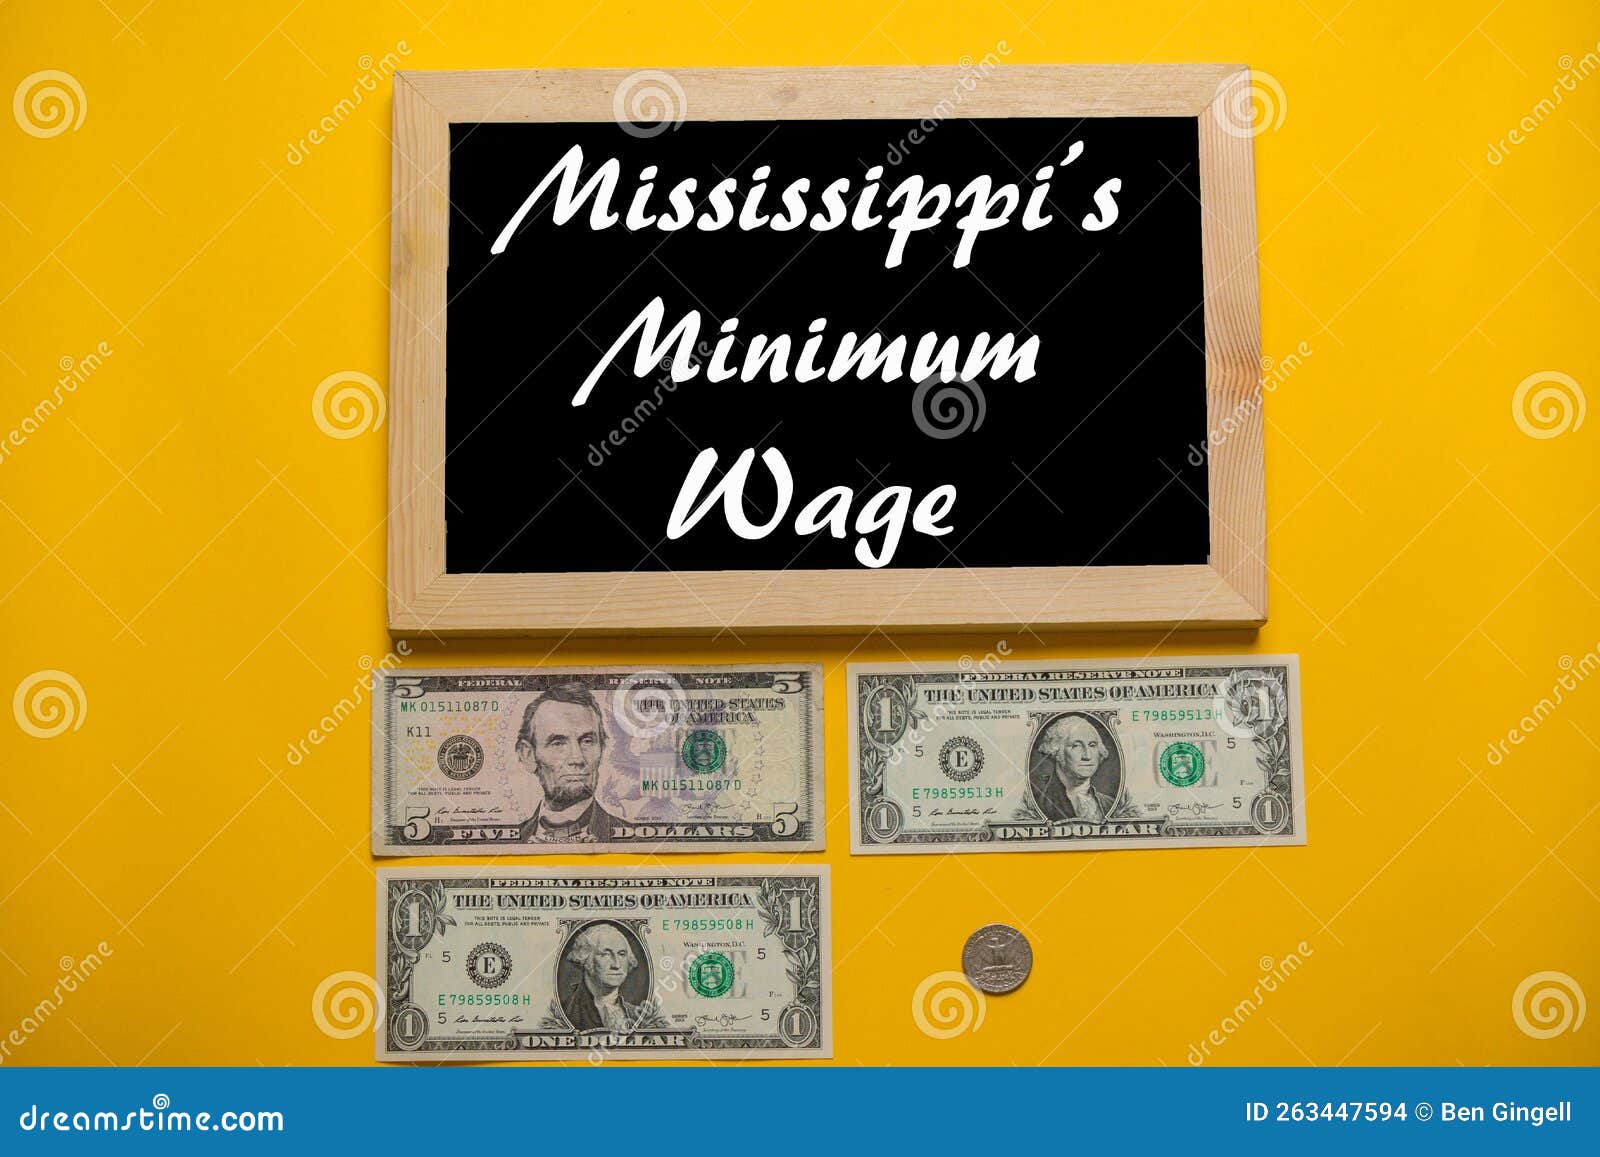 United States Minimum Wage stock illustration. Illustration of cash